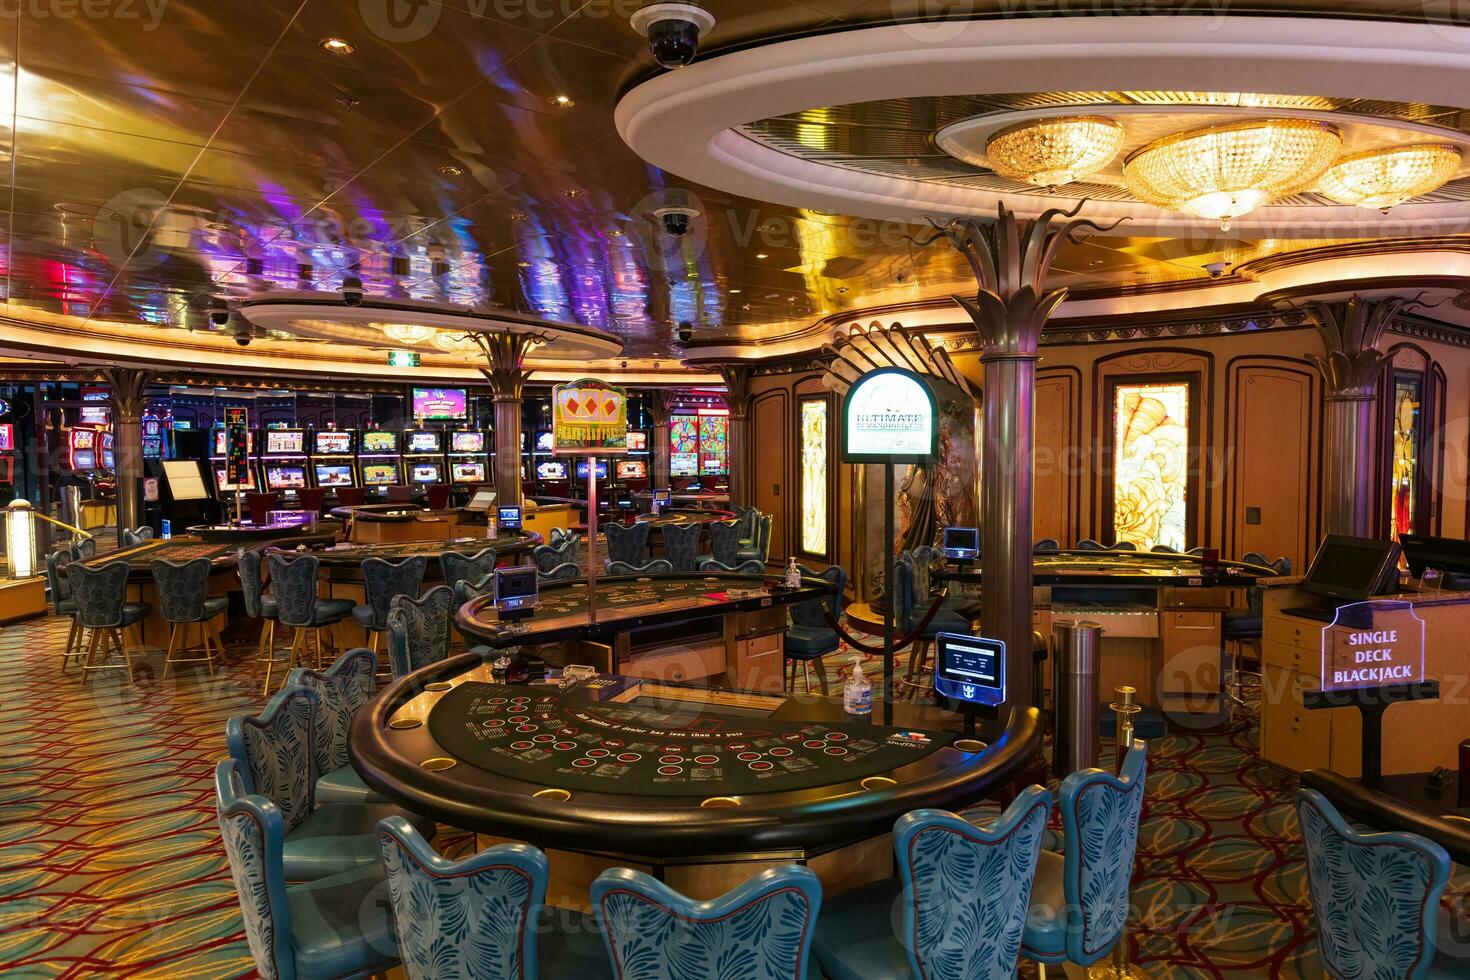 crociera nave casinò gioco d'azzardo manganello e fessura macchine in attesa per i giocatori d'azzardo e turista per trascorrere i soldi foto